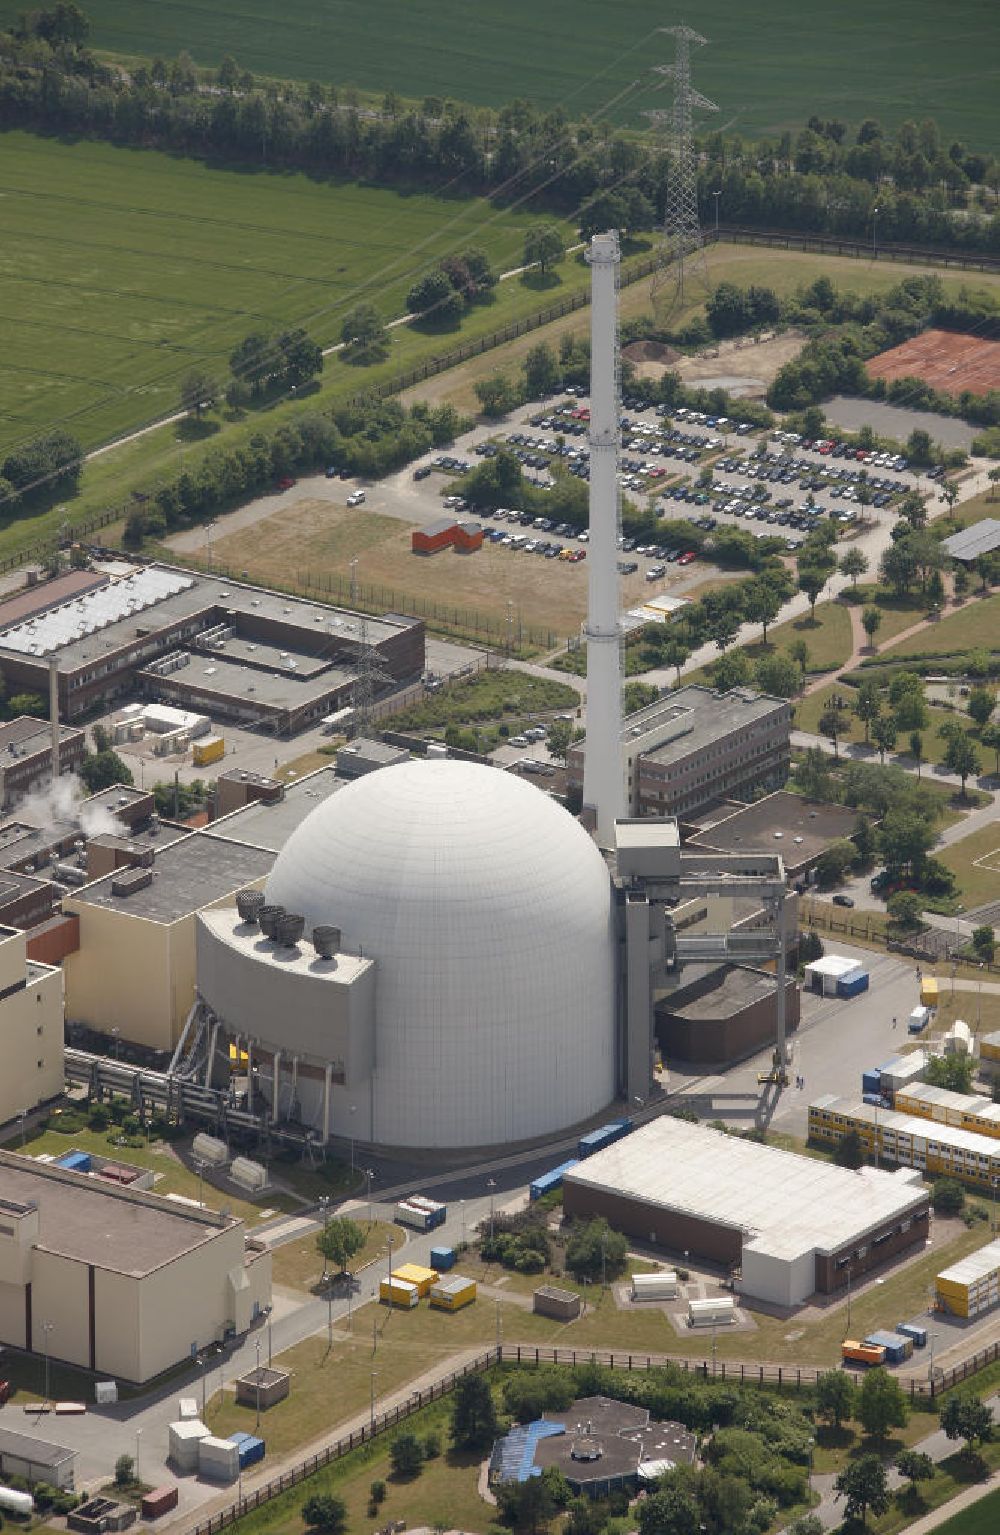 Aerial image Grohnde - Kernkraftwerk KKW / Atomkraftwerk AKW Grohnde KWG an der Weser in Niedersachsen. Nuclear power station NPS / atomic plant Grohnde at the Weser river in Lower Saxony.